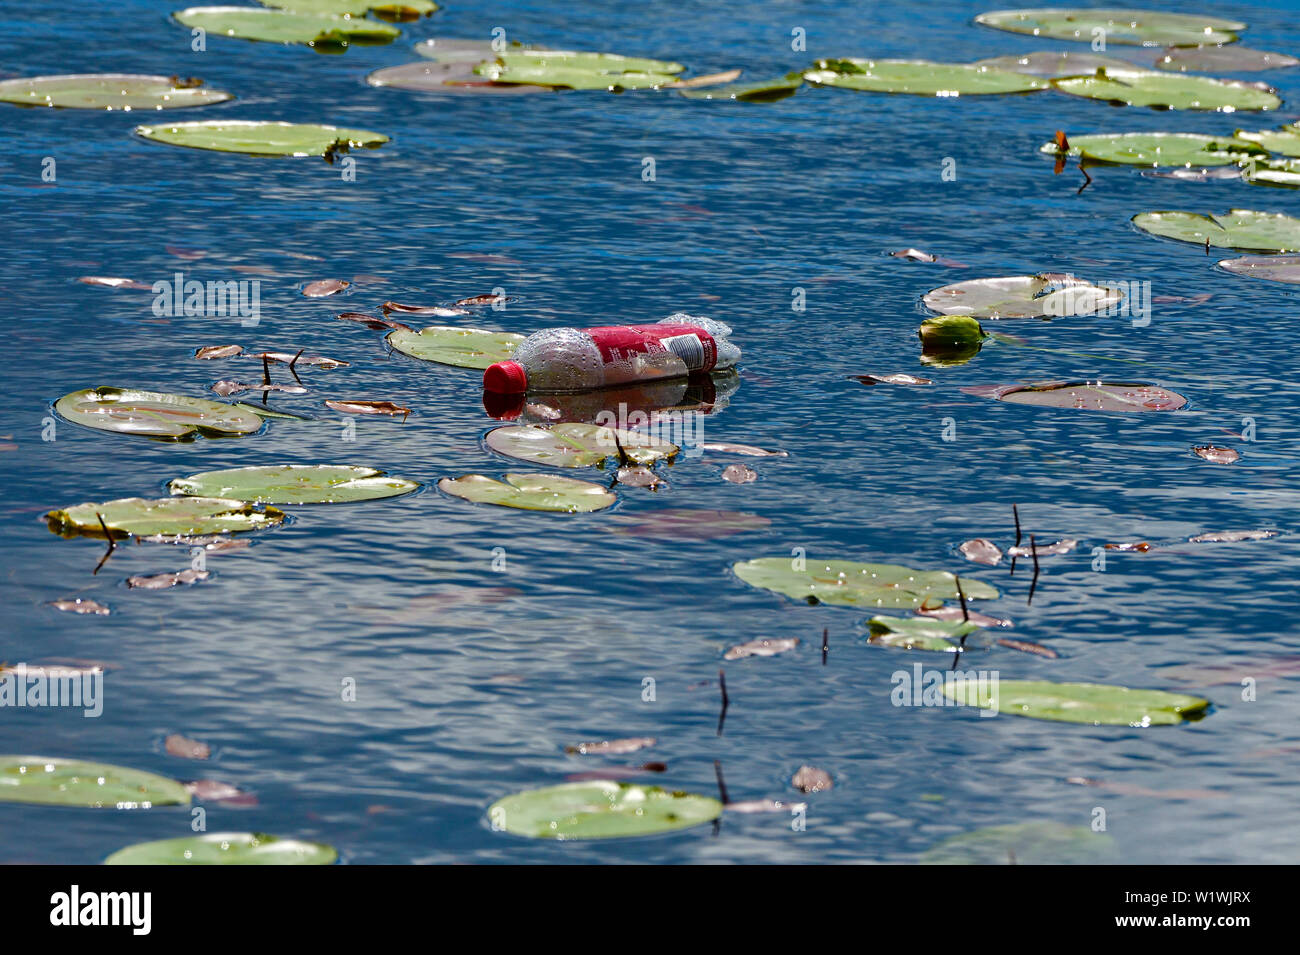 Ein Kunststoff Limonade Flasche Schweben zwischen dem Lilly Pads auf einem kleinen See in ländlichen Alberta, Kanada. Stockfoto